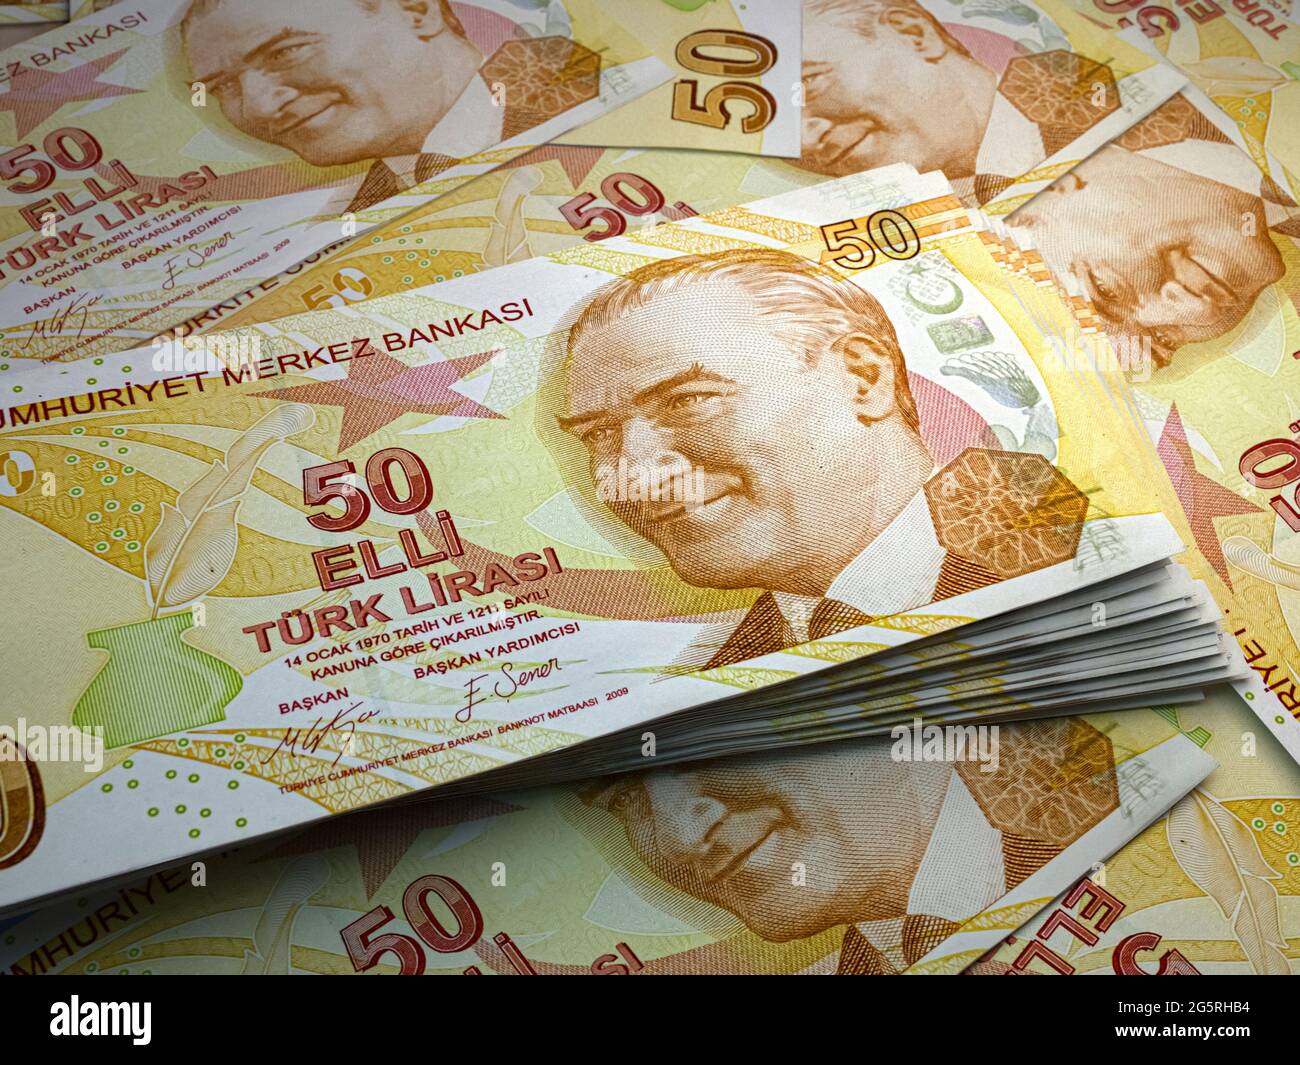 Das Geld der Türkei. Türkische Lira-Rechnungen. VERSUCHEN Sie ES mit  Banknoten. 50 Liralar. Handel, Finanzen, Nachrichten Hintergrund  Stockfotografie - Alamy